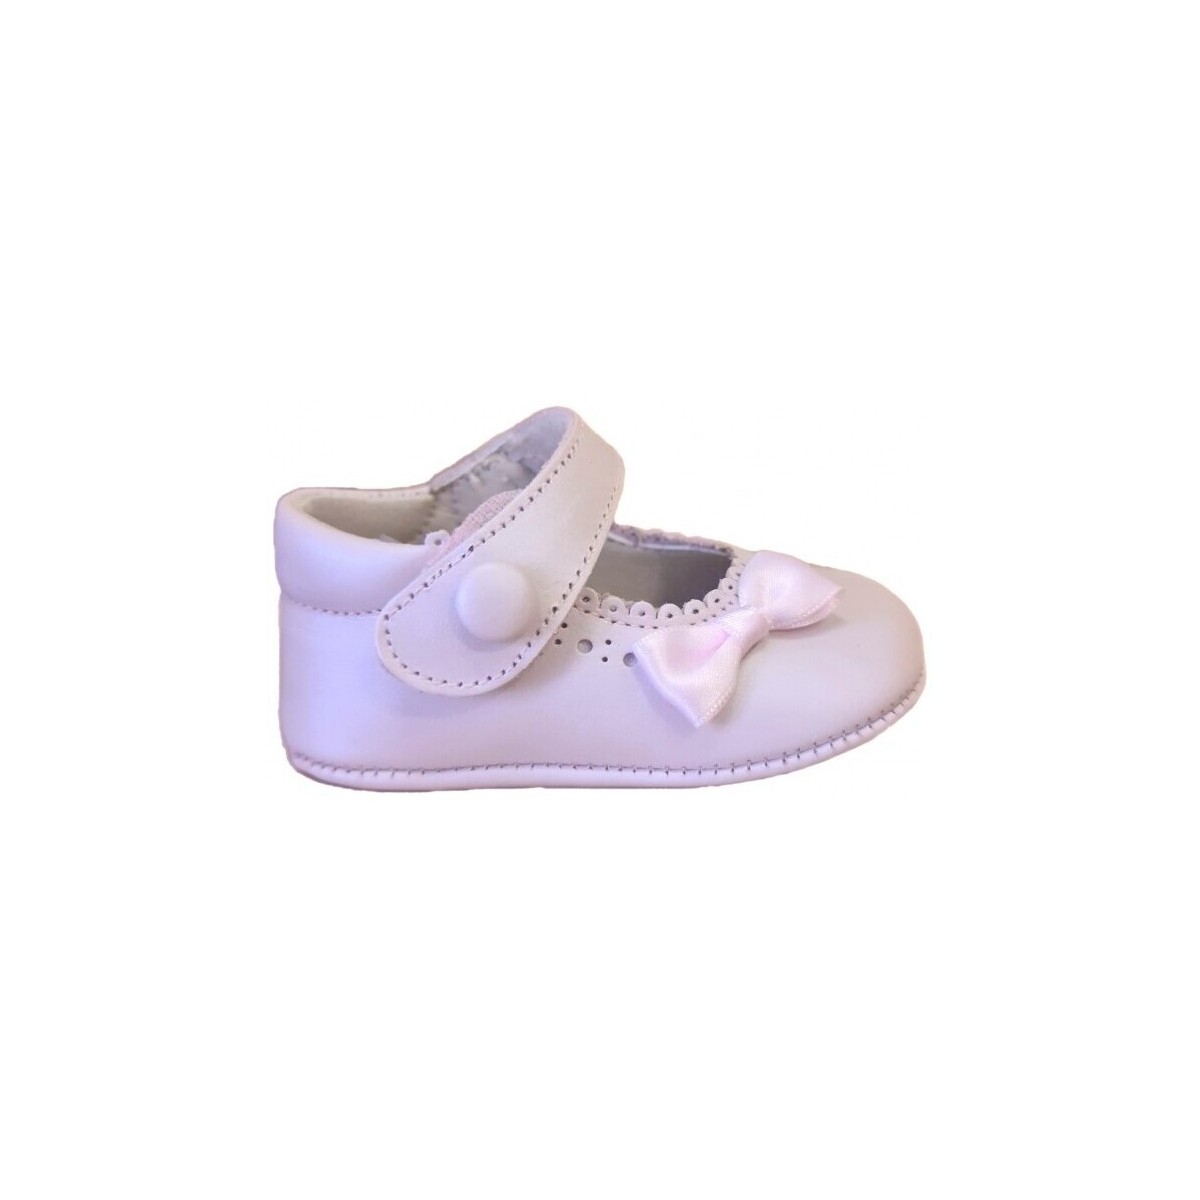 Παπούτσια Αγόρι Σοσονάκια μωρού Citos 26290-15 Ροζ